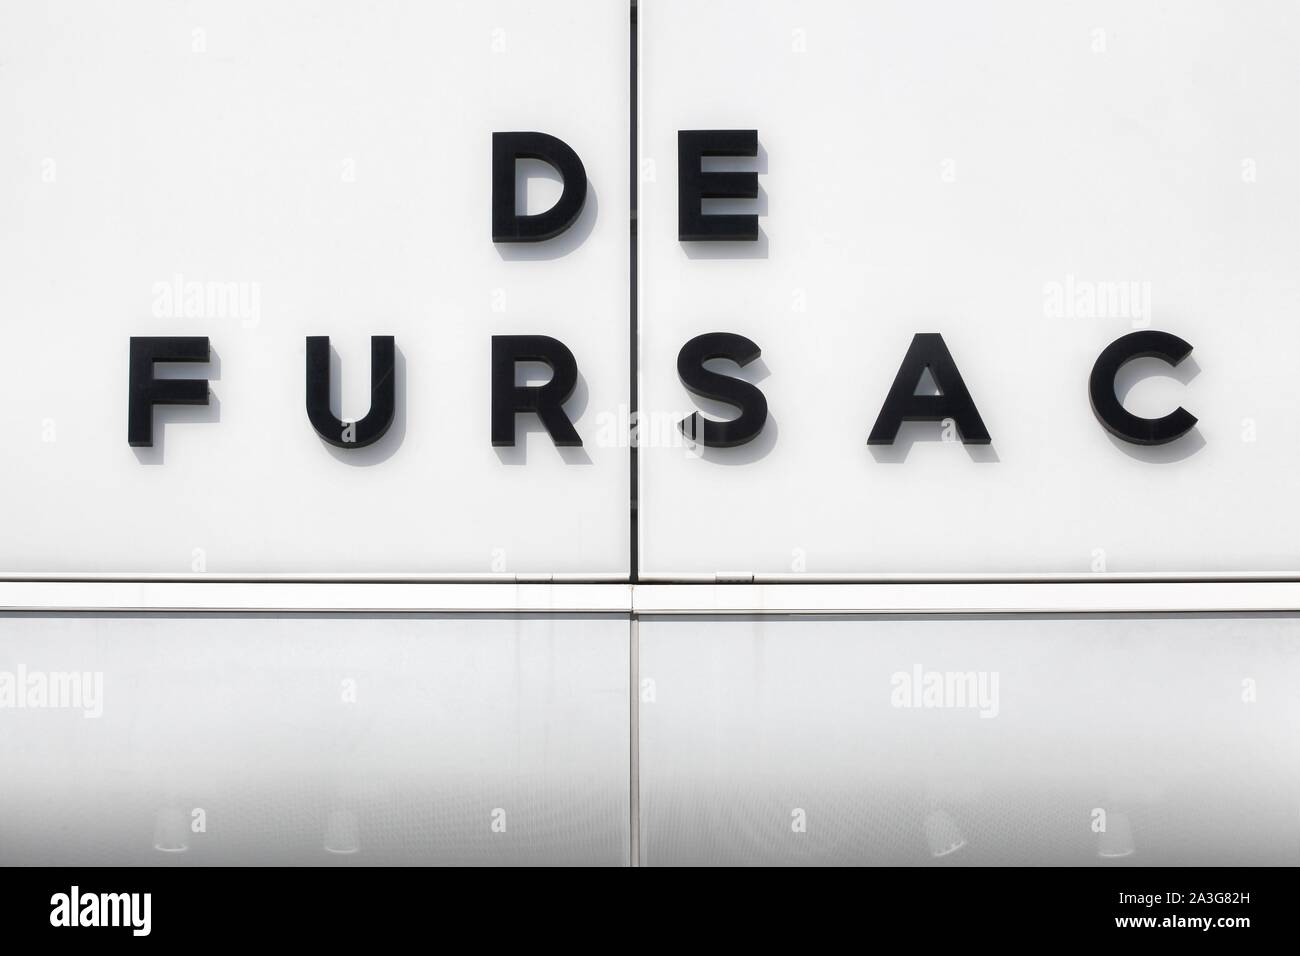 Villefontaine, France - September 13, 2019: De Fursac logo on a wall ...